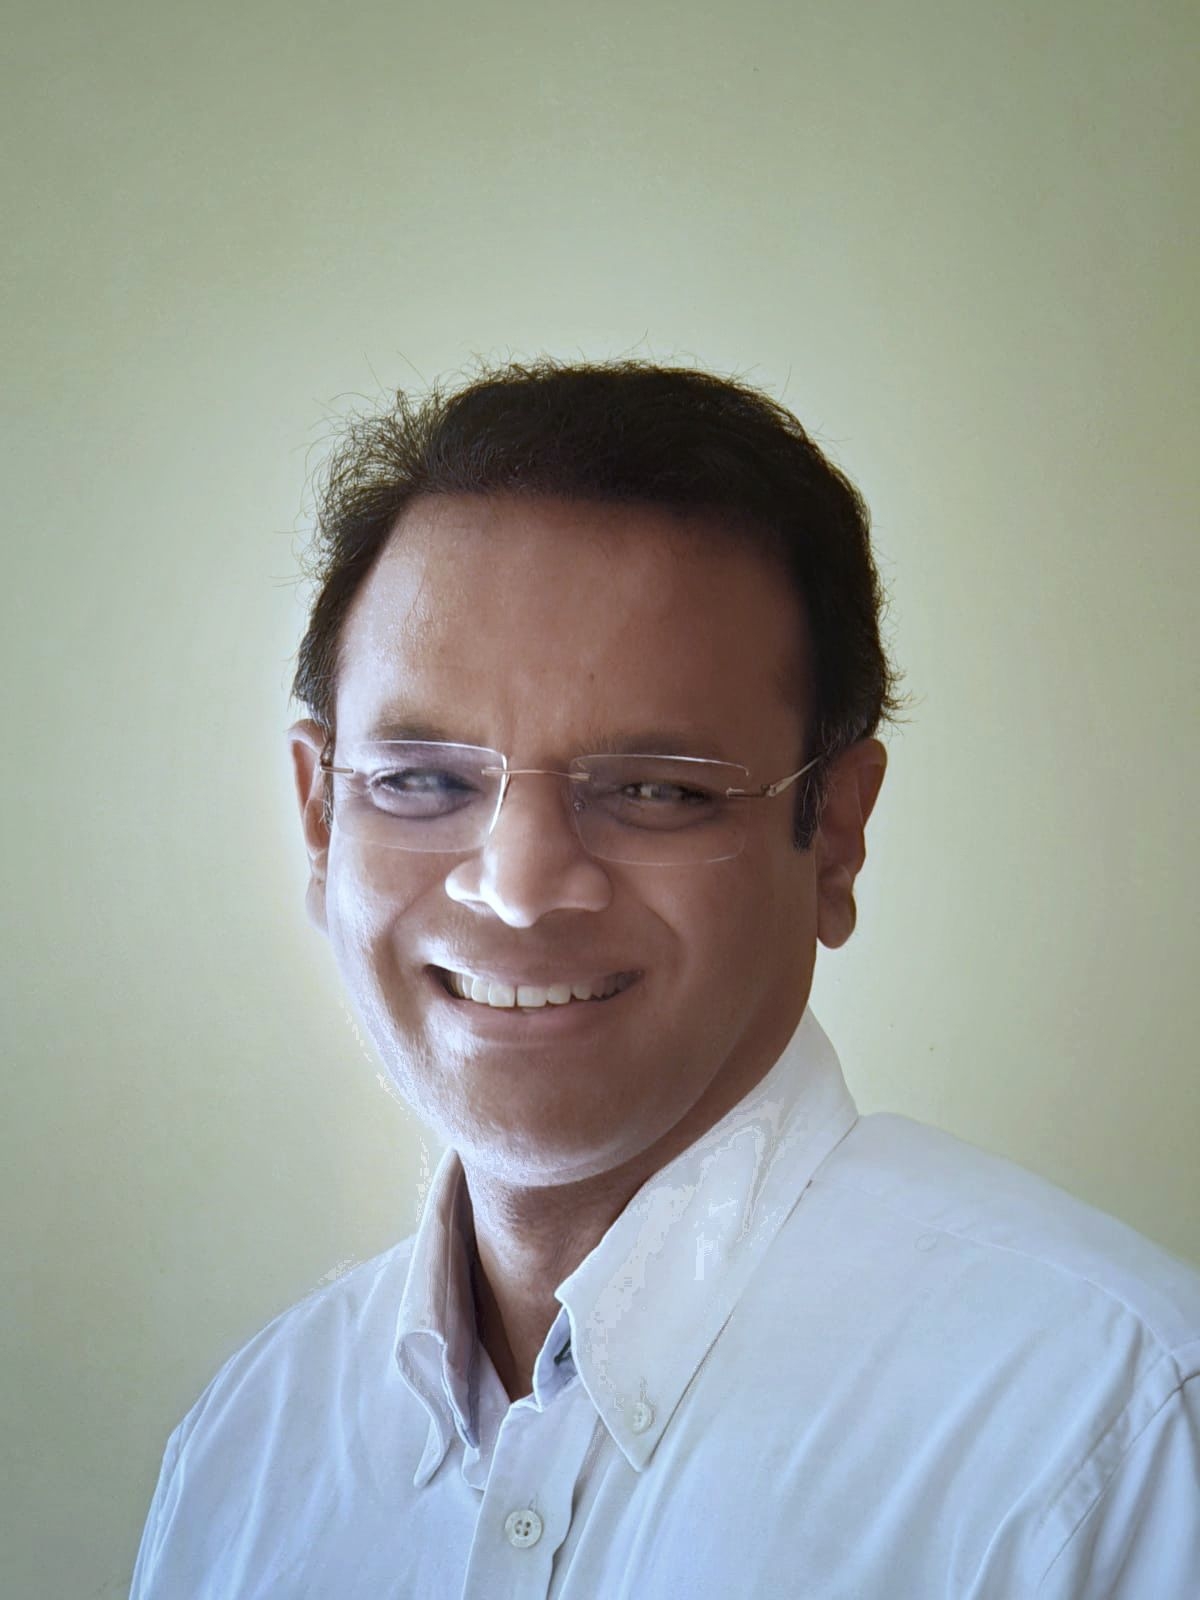 Dr. Srinivas Rao